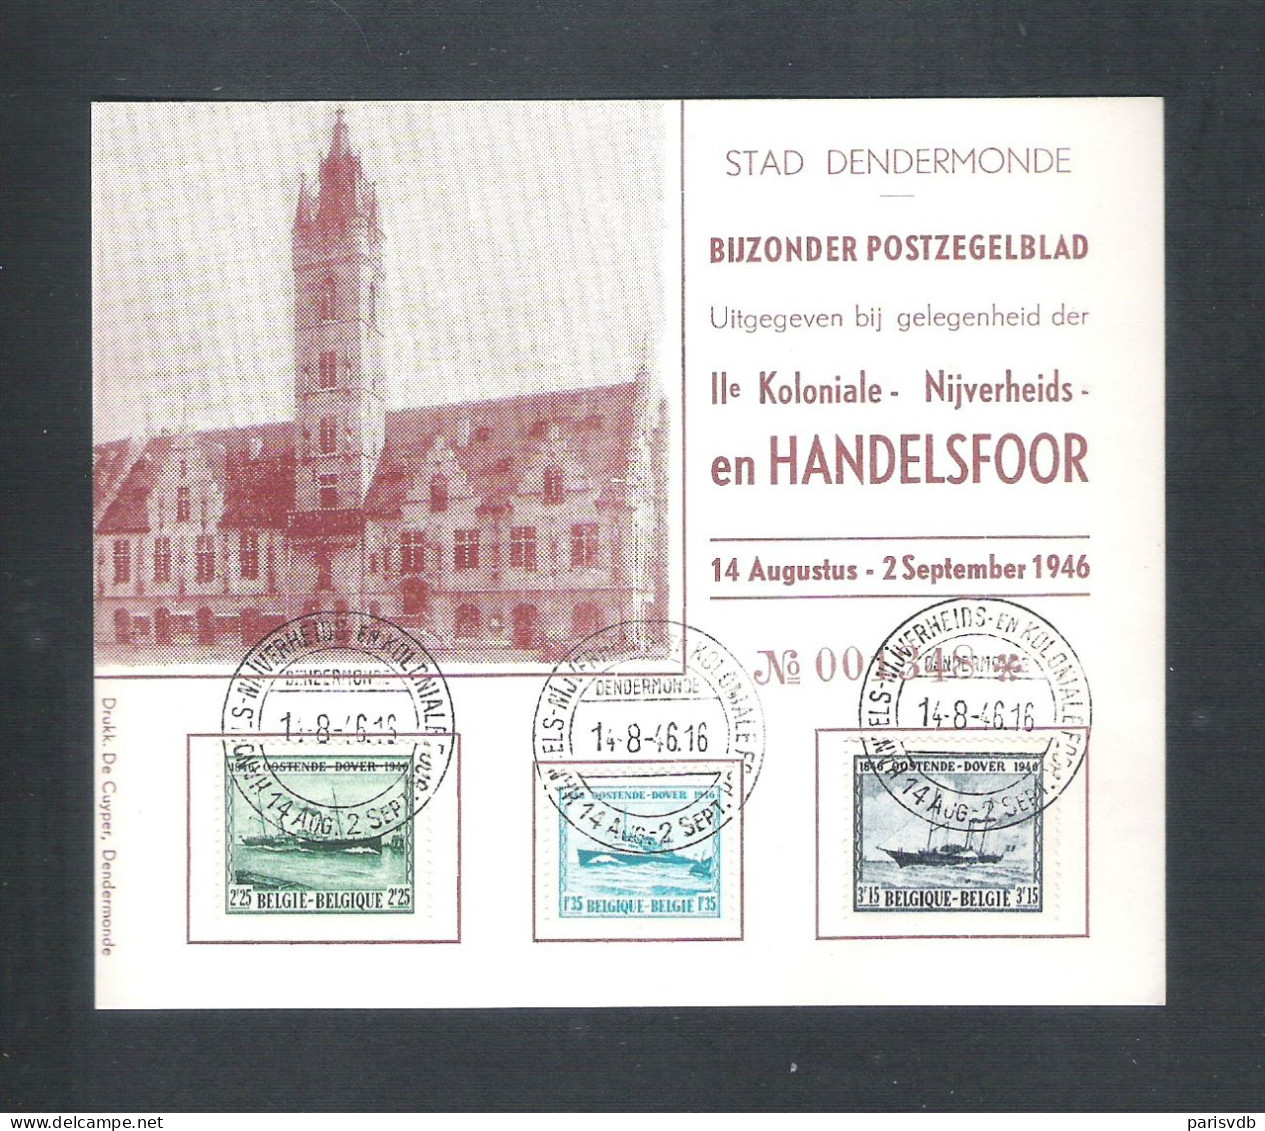 DENDERMONDE- BIJZONDER POSTZEGELBLAD -IIe KOLONIALE-NIJVERHIDS- EN HANDELSFOOR 1946 (14.520) - Dendermonde